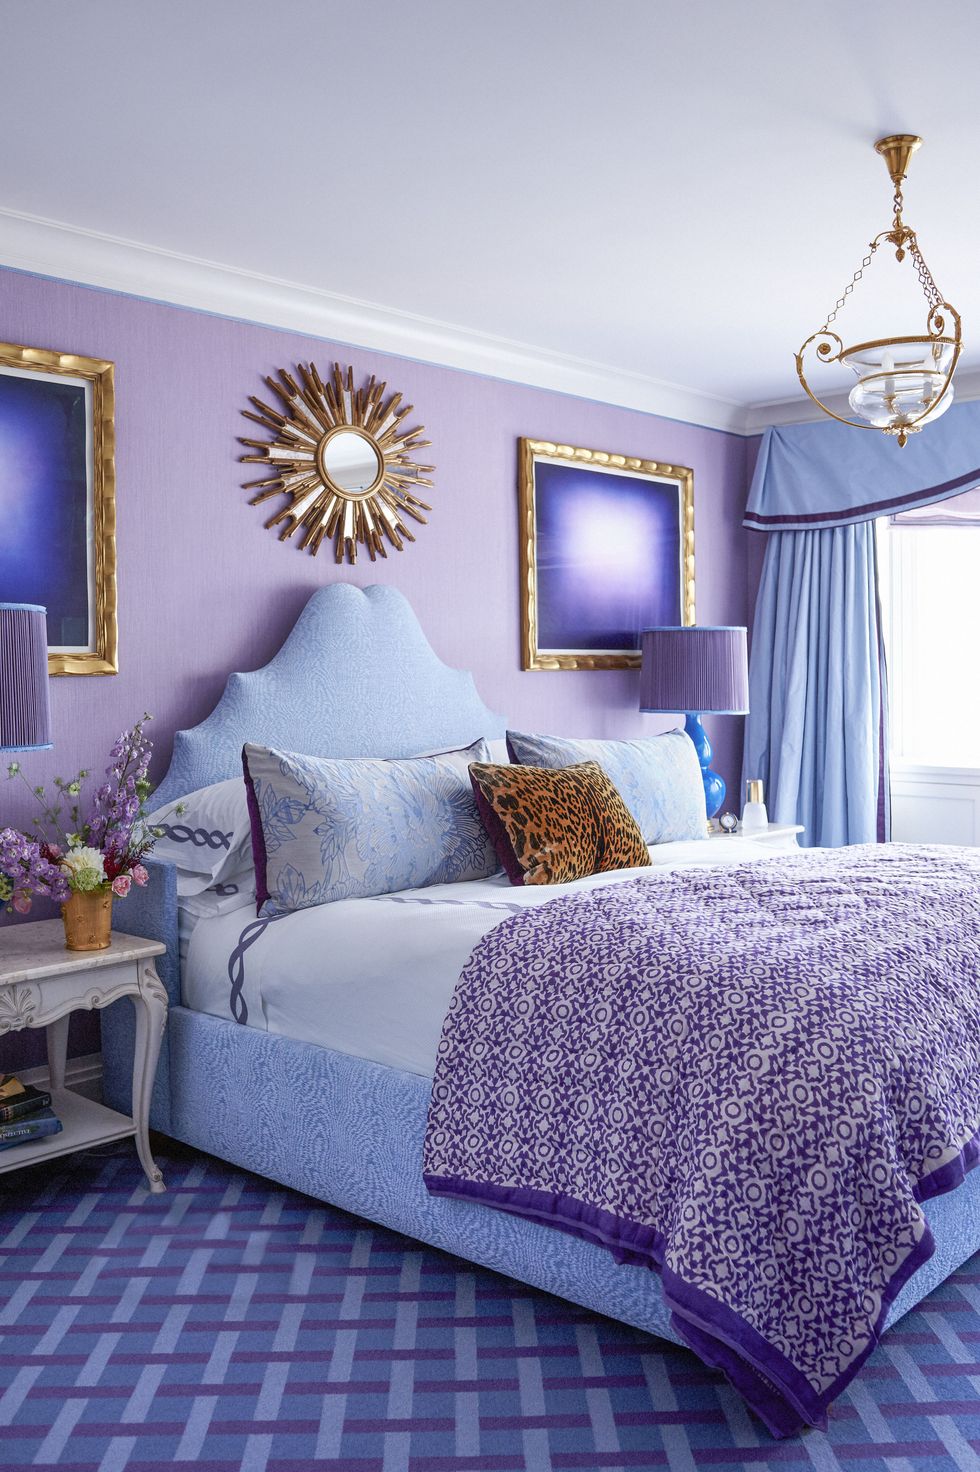 Màu xanh lam là một trong những lựa chọn được ưu tiên khi trang trí phòng ngủ. Nhưng nếu bạn là 'fan' của màu tím thì hoàn toàn có thể kết hợp cả 2 ở mức độ nhạt như màu pastel. Đừng quên thêm sắc trắng vào bộ chăn gối hay sơn trần phòng ngủ để trung hòa lại cảm giác nhé!